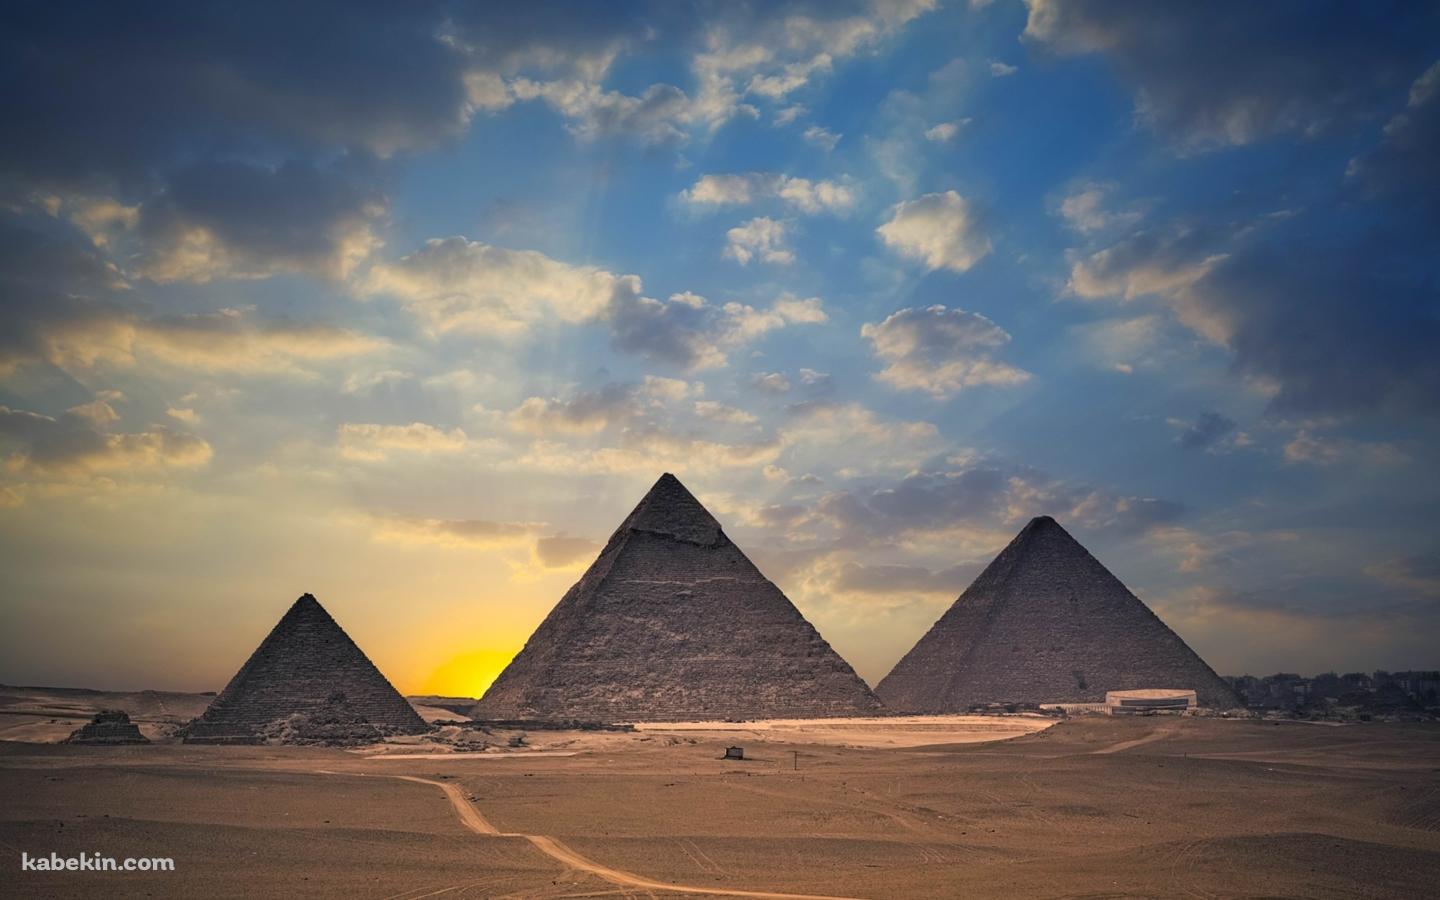 エジプトの並んだピラミッドの壁紙(1440px x 900px) 高画質 PC・デスクトップ用